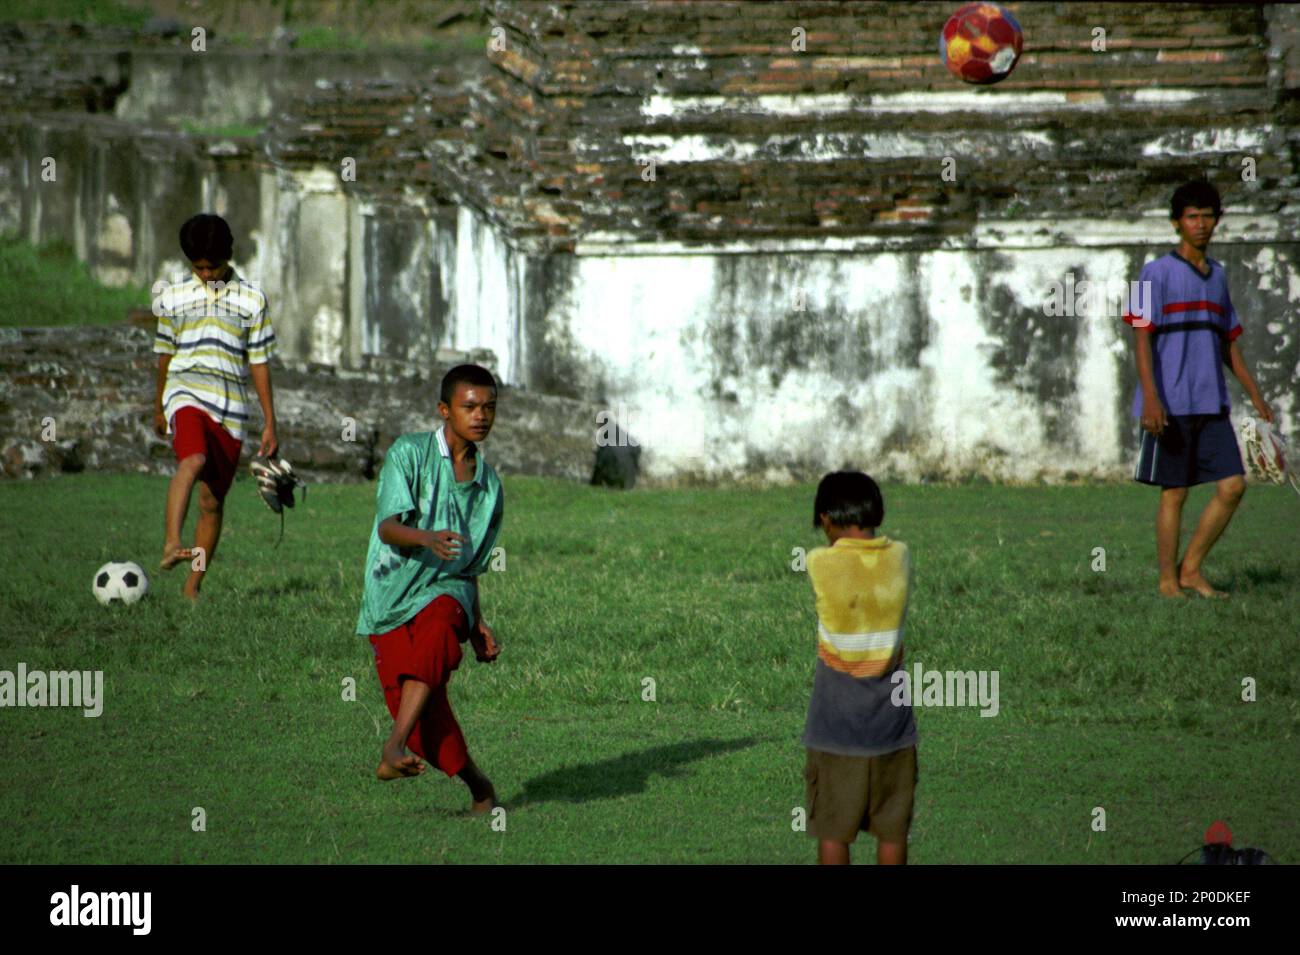 Kinder spielen Fußball auf einem Grasfeld zwischen den Ruinen des Kaibon Palace, einem kulturellen Erbe der Banten Sultanate-Zeit, das sich in einer Gegend namens Banten Lama (Old Banten) in Serang, Banten, Indonesien befindet, auf diesem Foto, das 2004 aufgenommen wurde. Eine kürzlich von Nurikah und E. Rakhmat Jazuli (Fakultät für Recht, Sultan Ageng Tirtayasa Universität, Banten) durchgeführte Feldforschung hat ergeben, dass es zahlreiche Verstöße gegen die Behandlung von Kulturerbeobjekten in der Region gab. Die Menschen üben sportliche Aktivitäten in der Umgebung von Kulturerbeobjekten aus, zum Beispiel Fußball spielen auf... Stockfoto